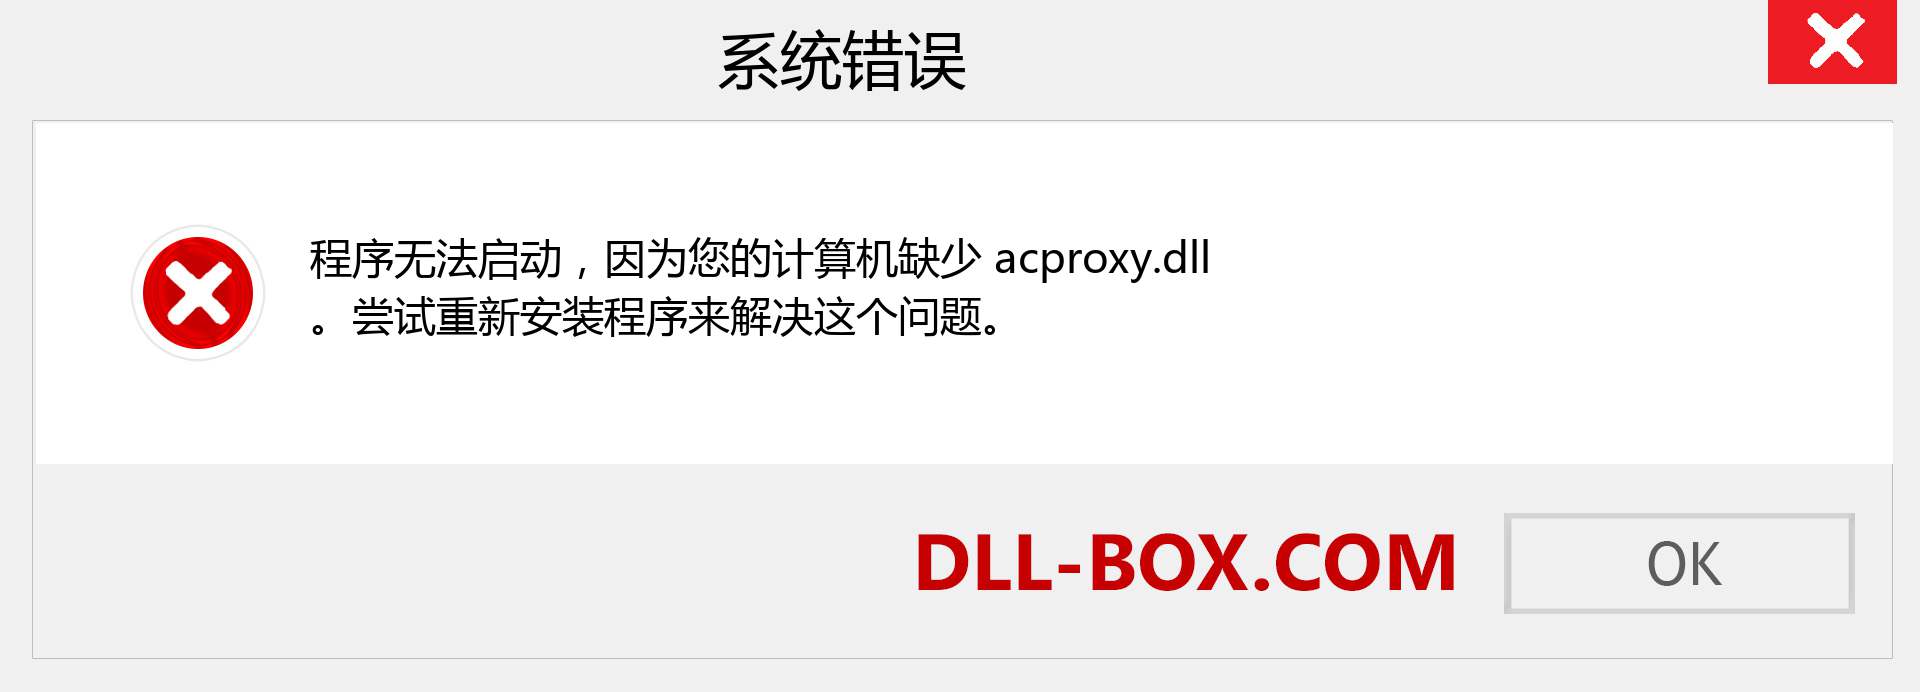 acproxy.dll 文件丢失？。 适用于 Windows 7、8、10 的下载 - 修复 Windows、照片、图像上的 acproxy dll 丢失错误